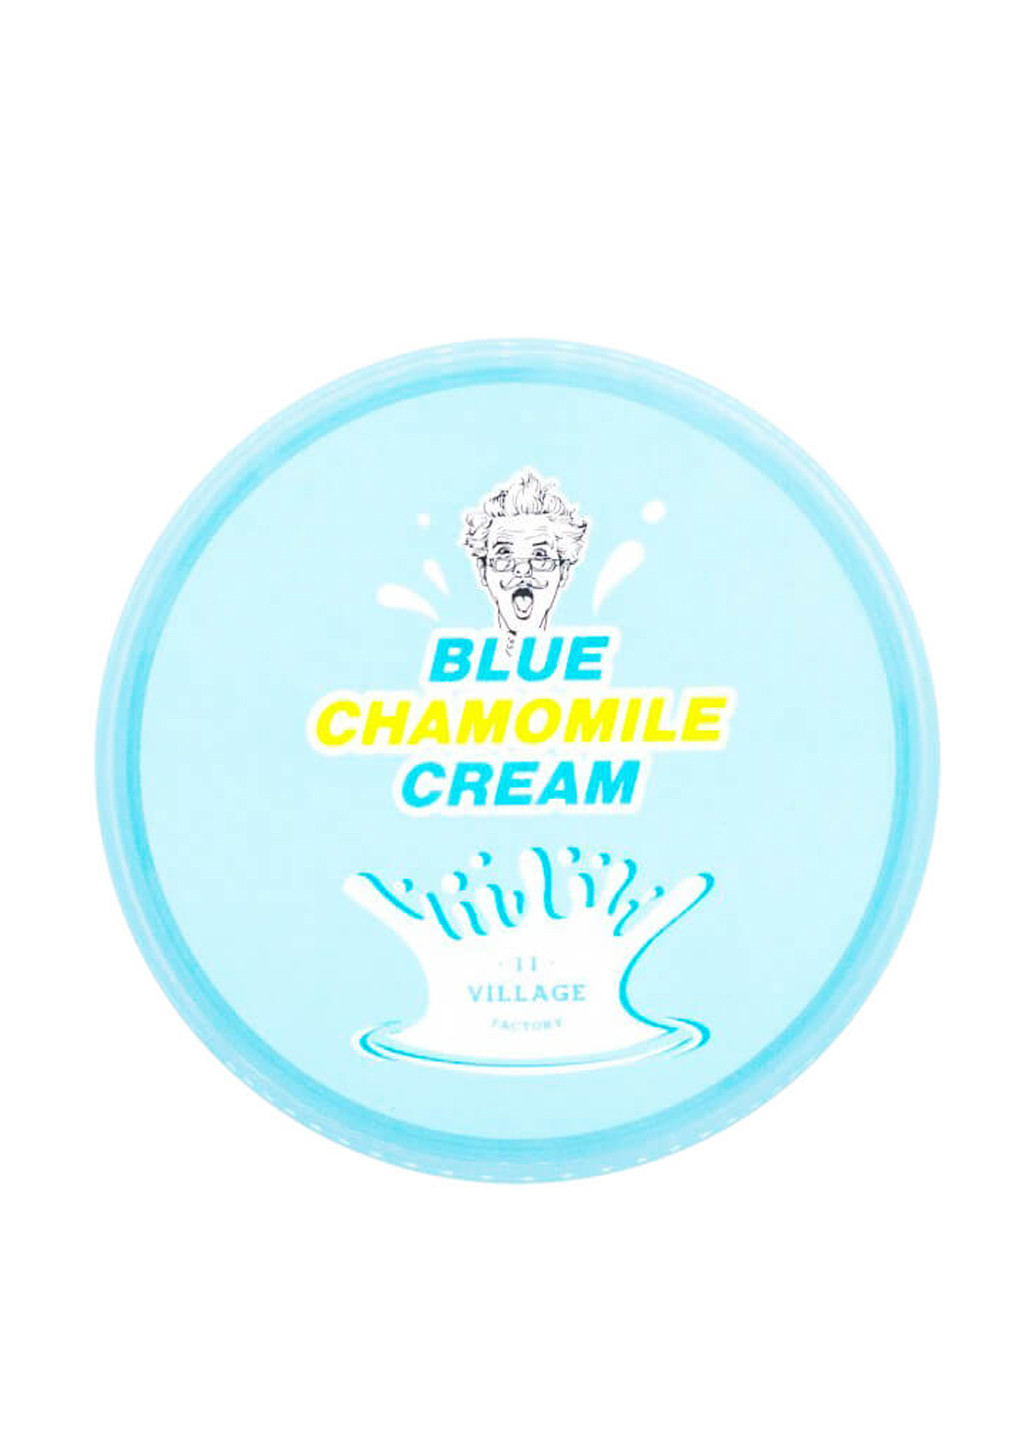 Успокаивающий крем для лица Blue Chamomile Cream, 300 мл 11 Village Factory